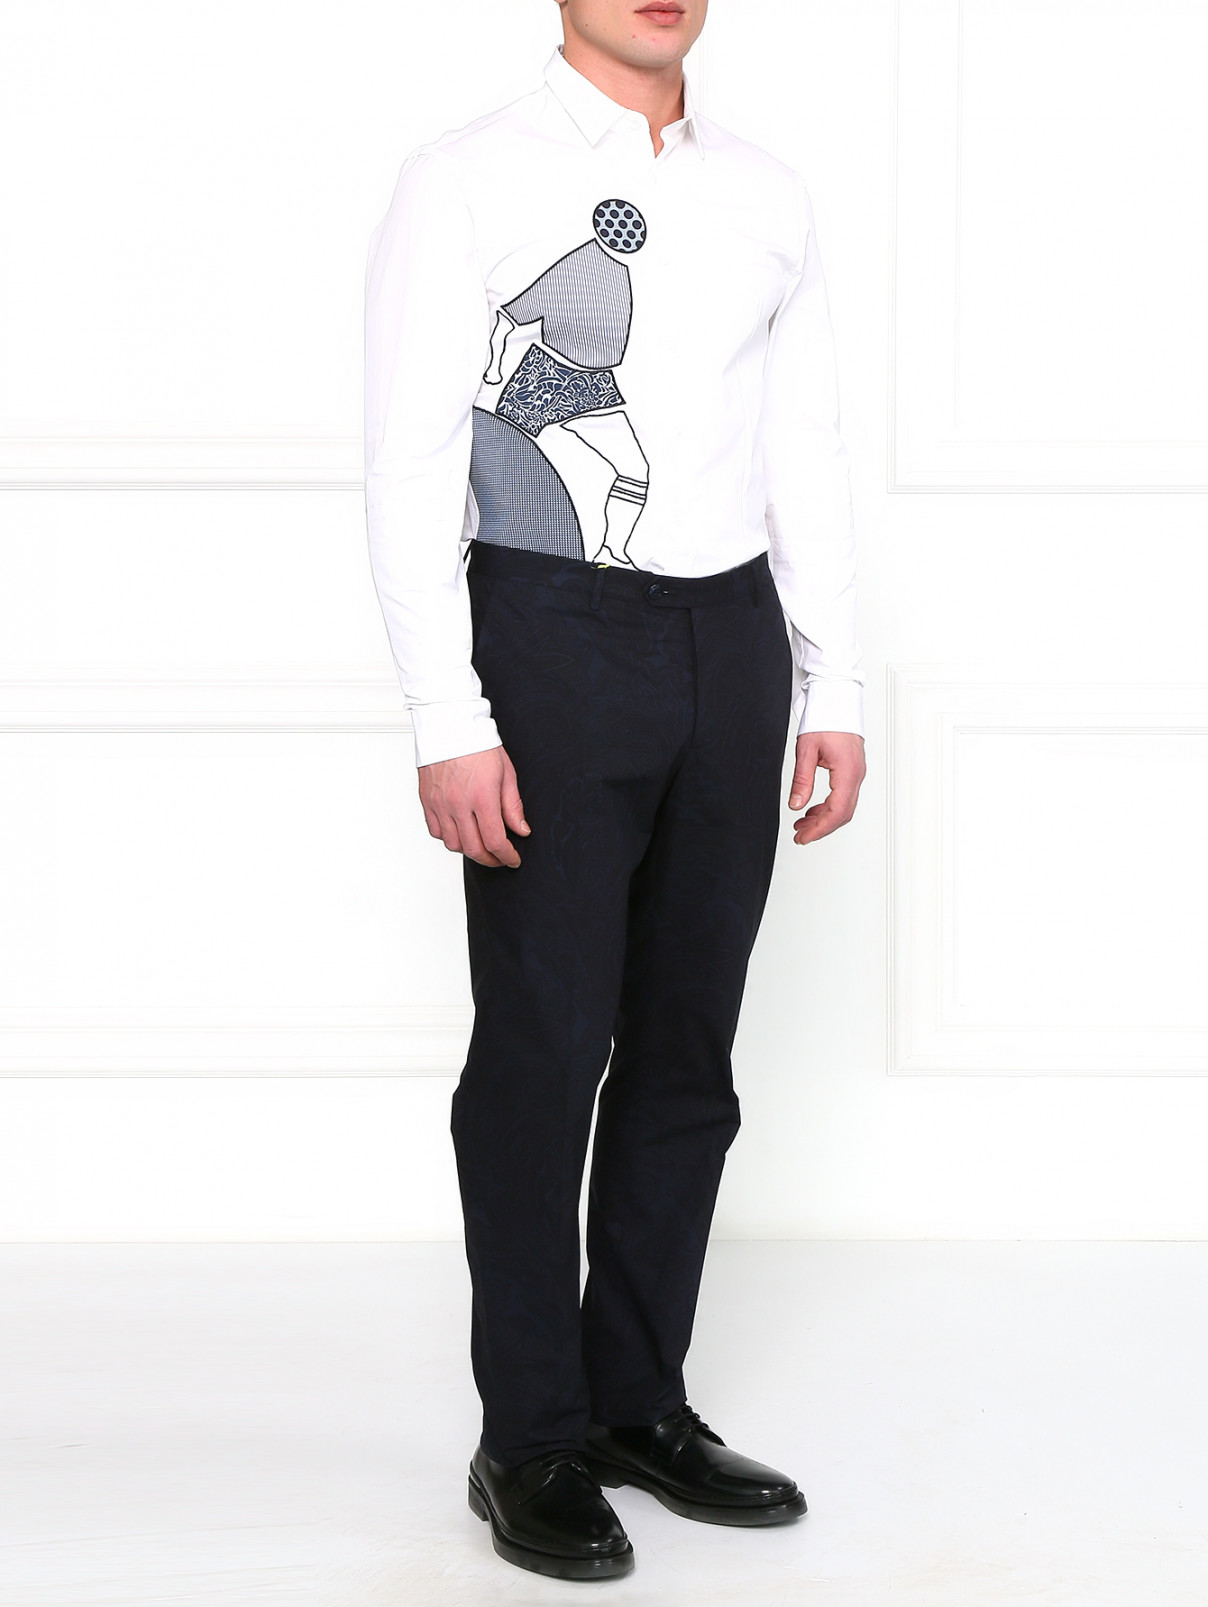 Рубашка из хлопка с узором Antonio Marras  –  Модель Общий вид  – Цвет:  Белый